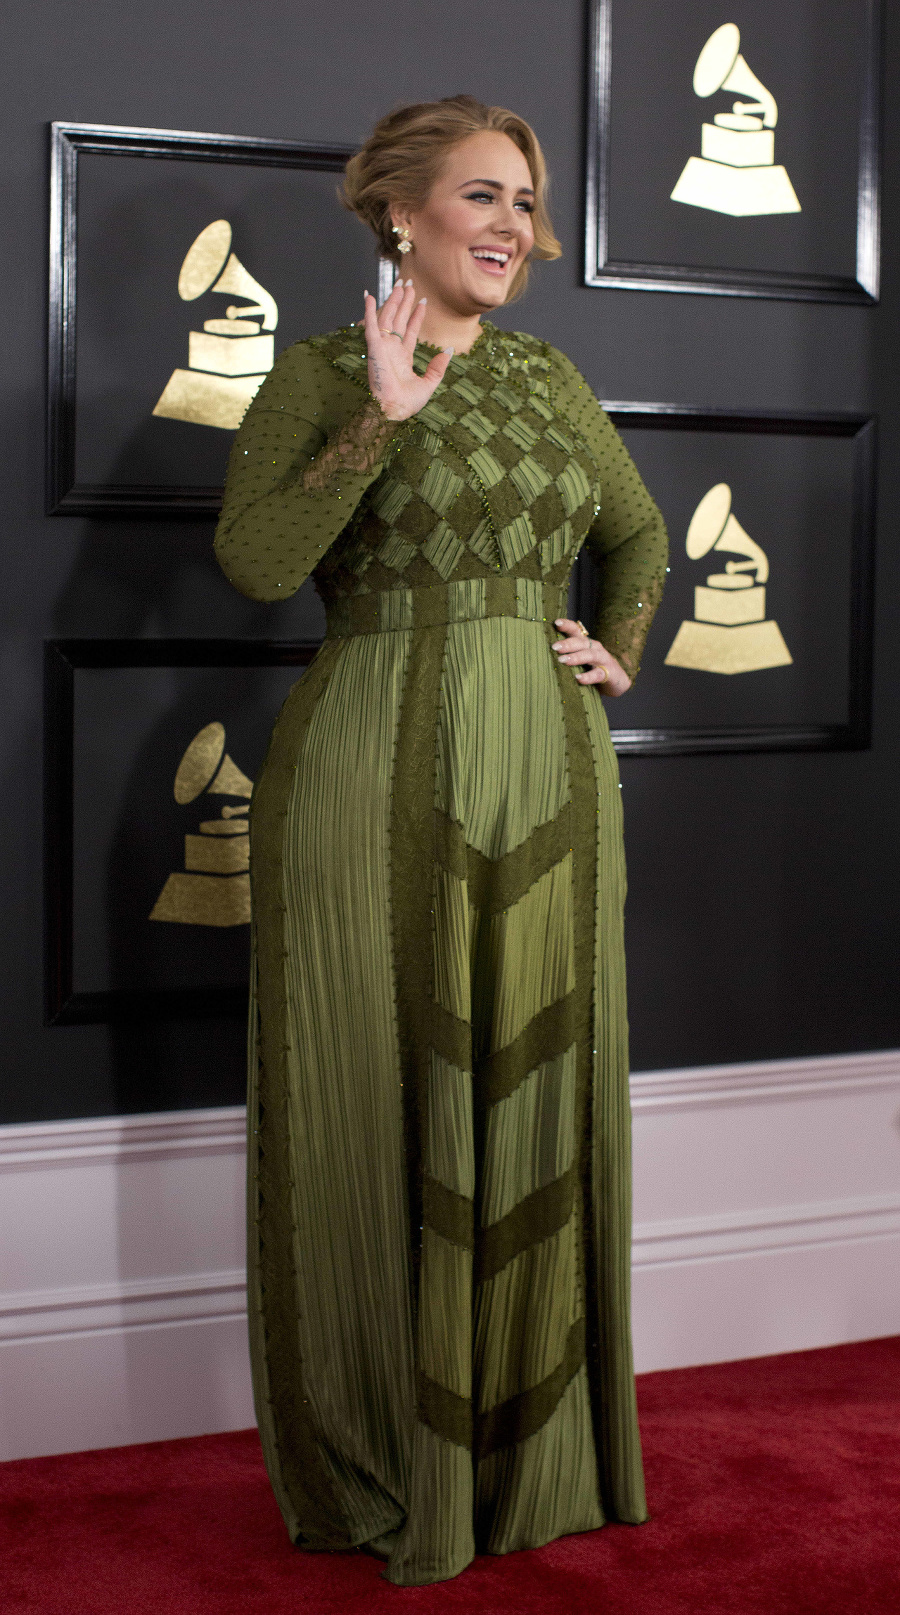 Speváčka Adele už rozchod